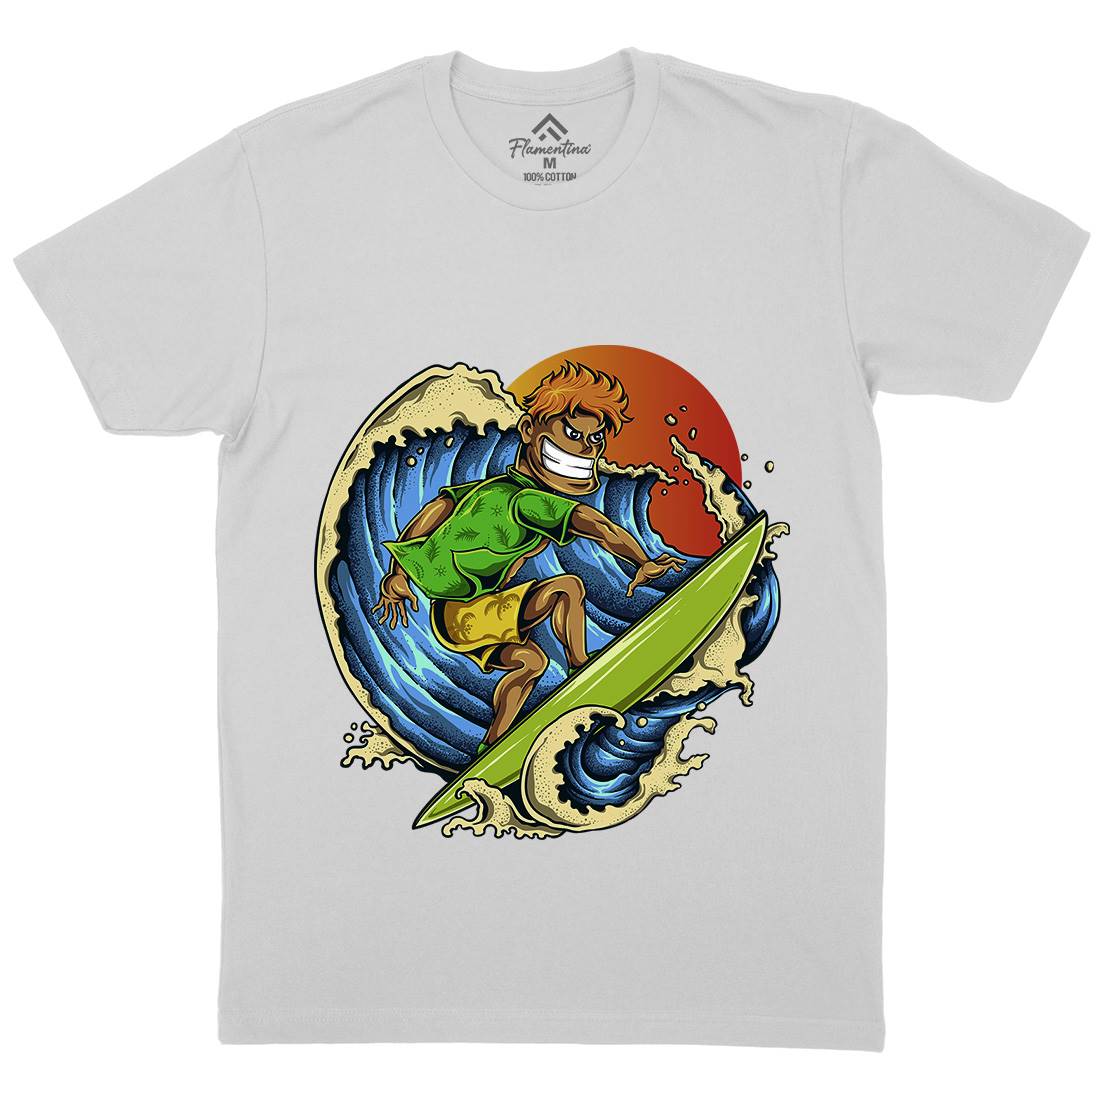 Pro Surfer Mens Crew Neck T-Shirt Surf A454